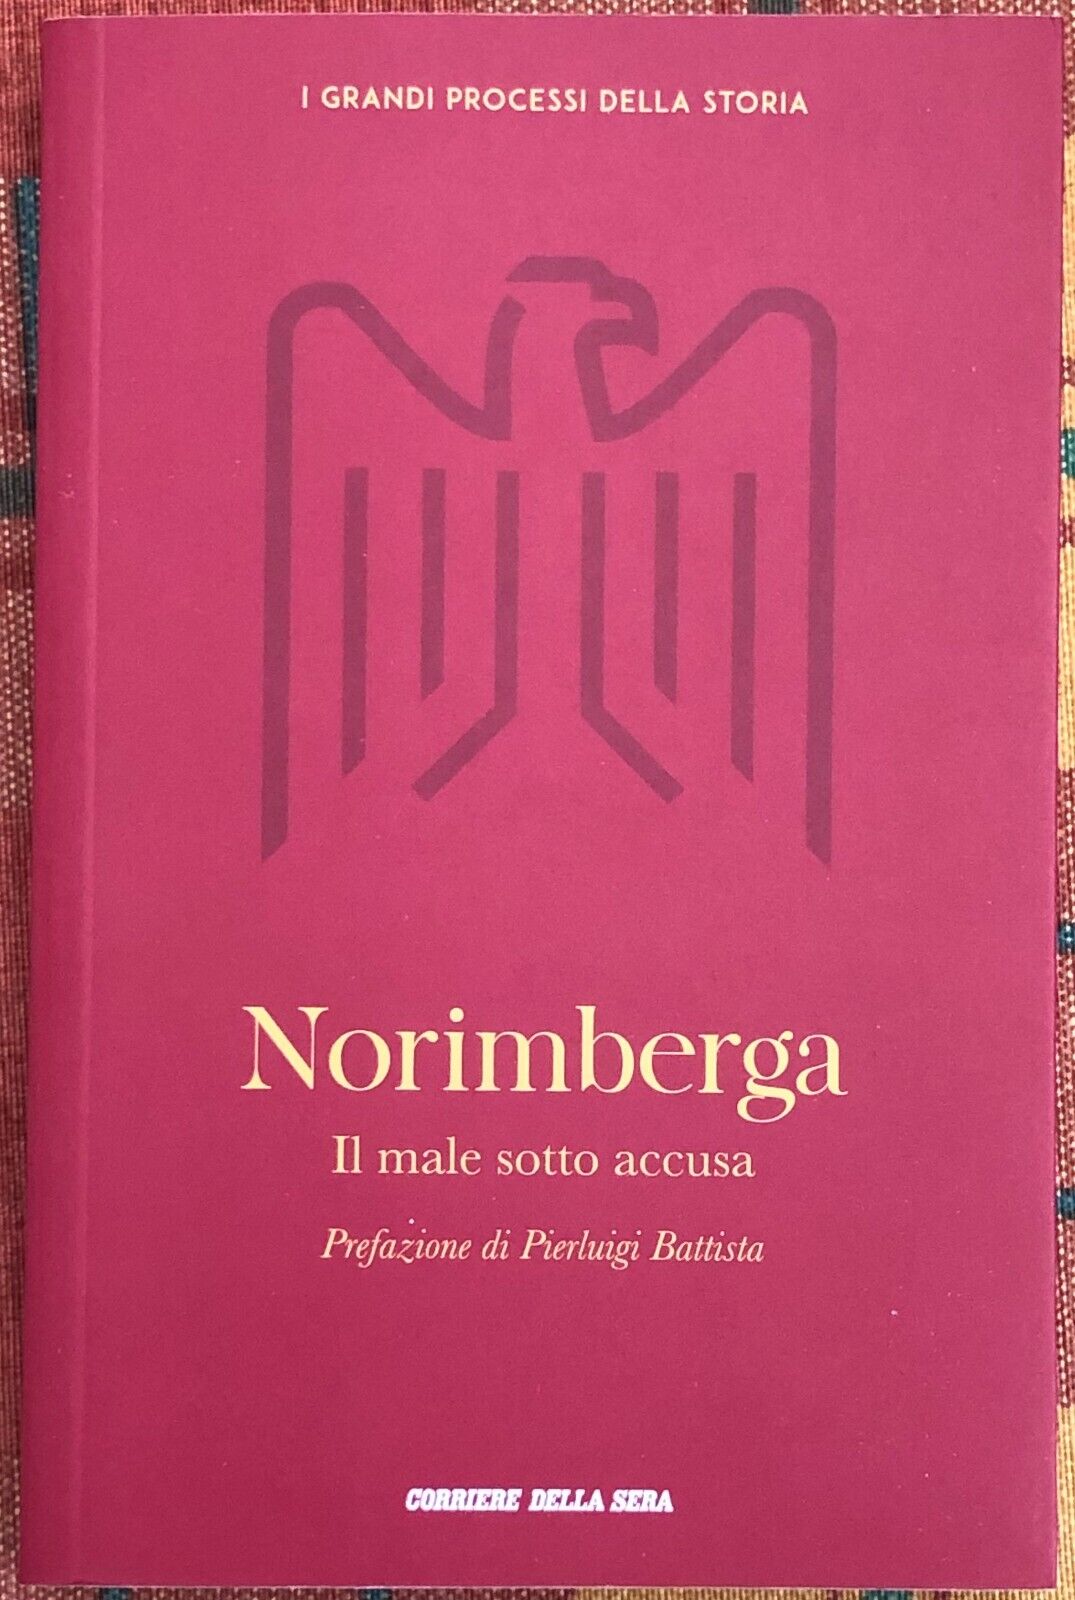  I grandi processi della storia n. 1 - Norimberga. Il male sotto accusa  di Barb